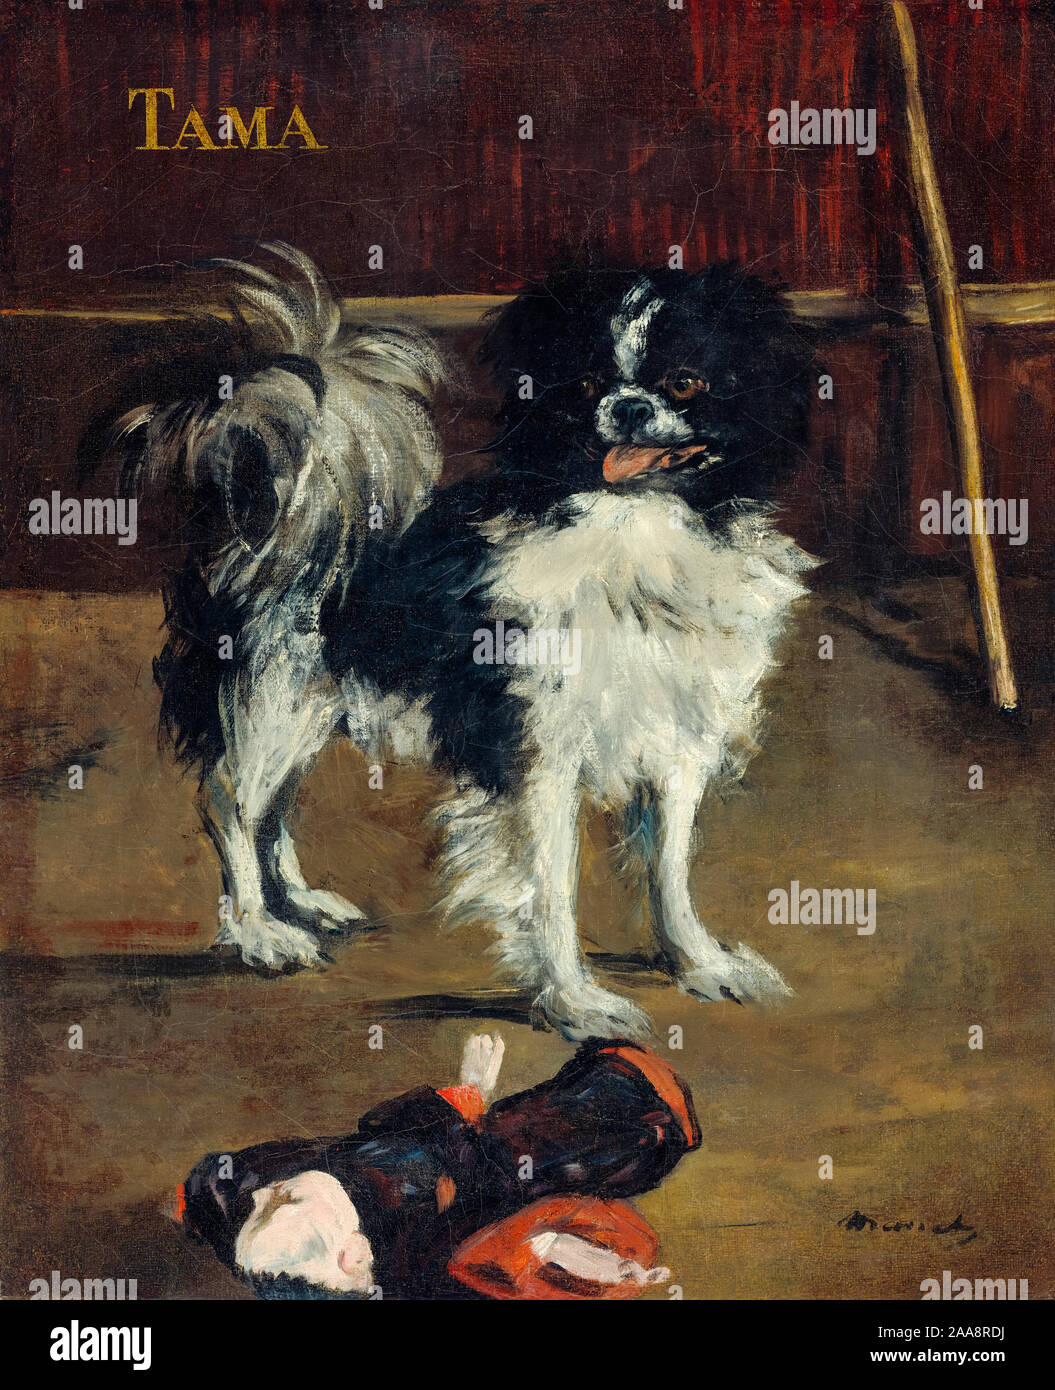 Edouard Manet, le Tama chien japonais, peinture, 1875 Banque D'Images